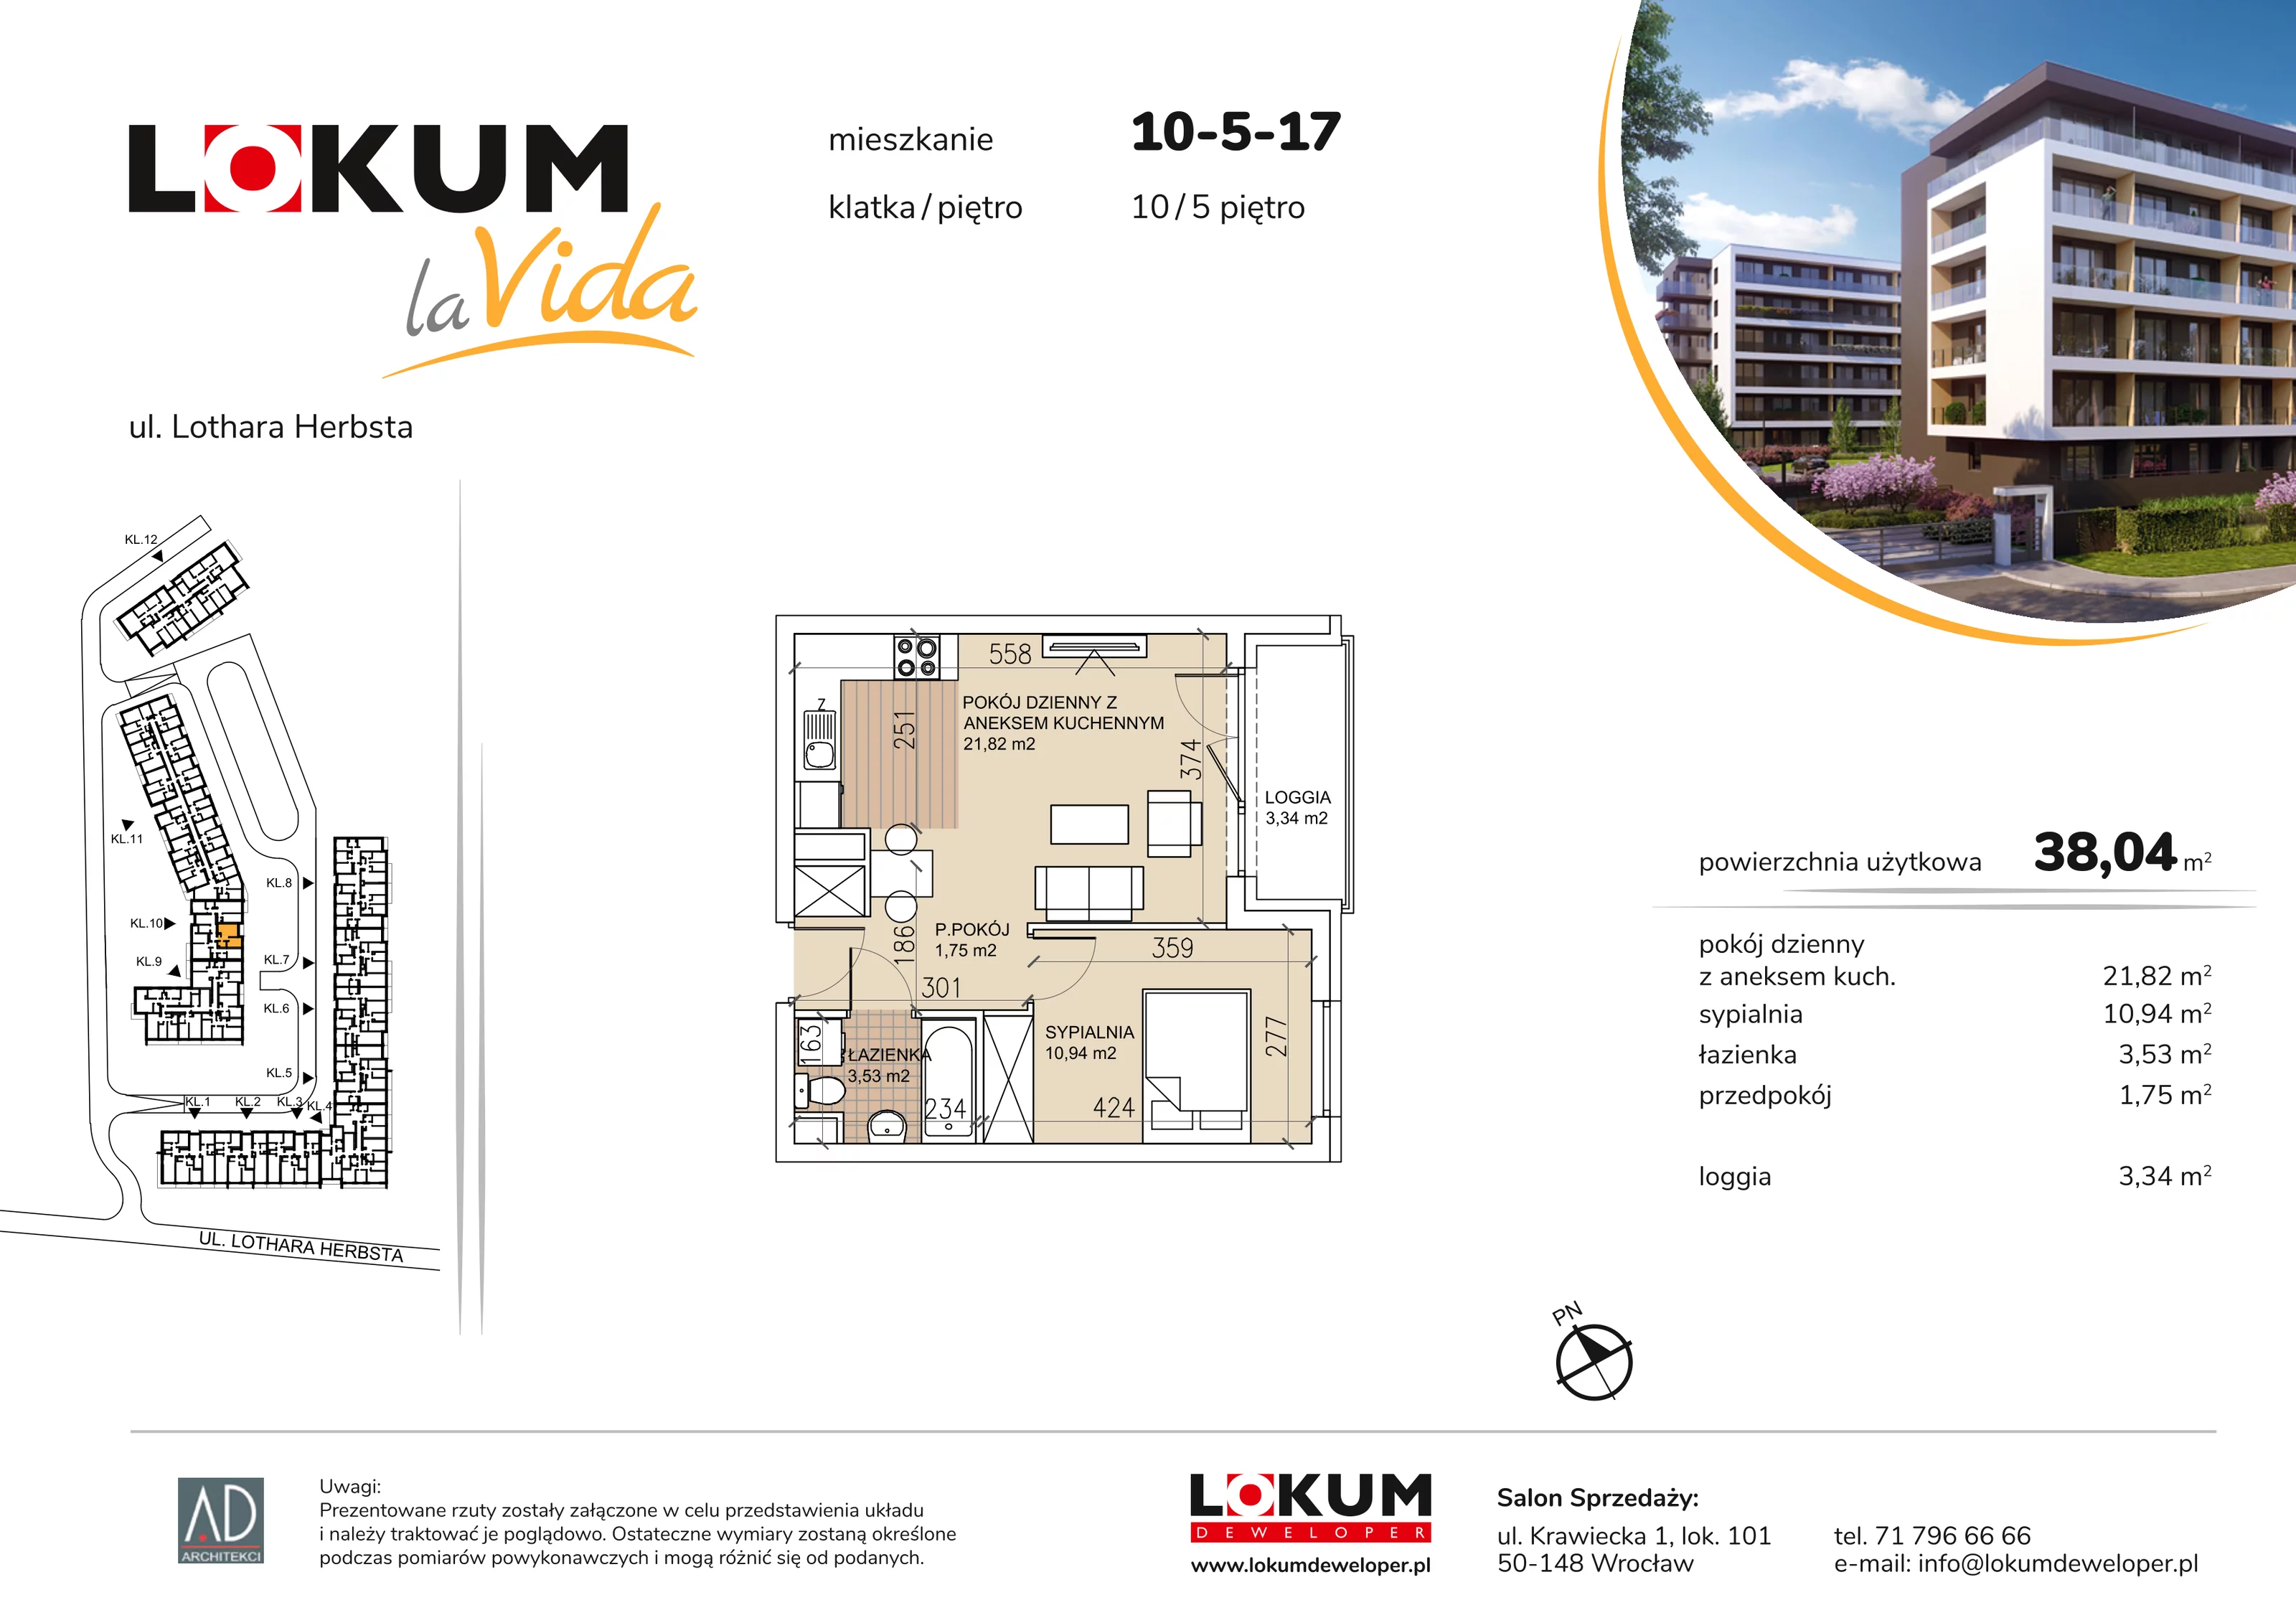 Mieszkanie 38,04 m², piętro 5, oferta nr 10-5-17, Lokum la Vida, Wrocław, Sołtysowice, ul. Lothara Herbsta